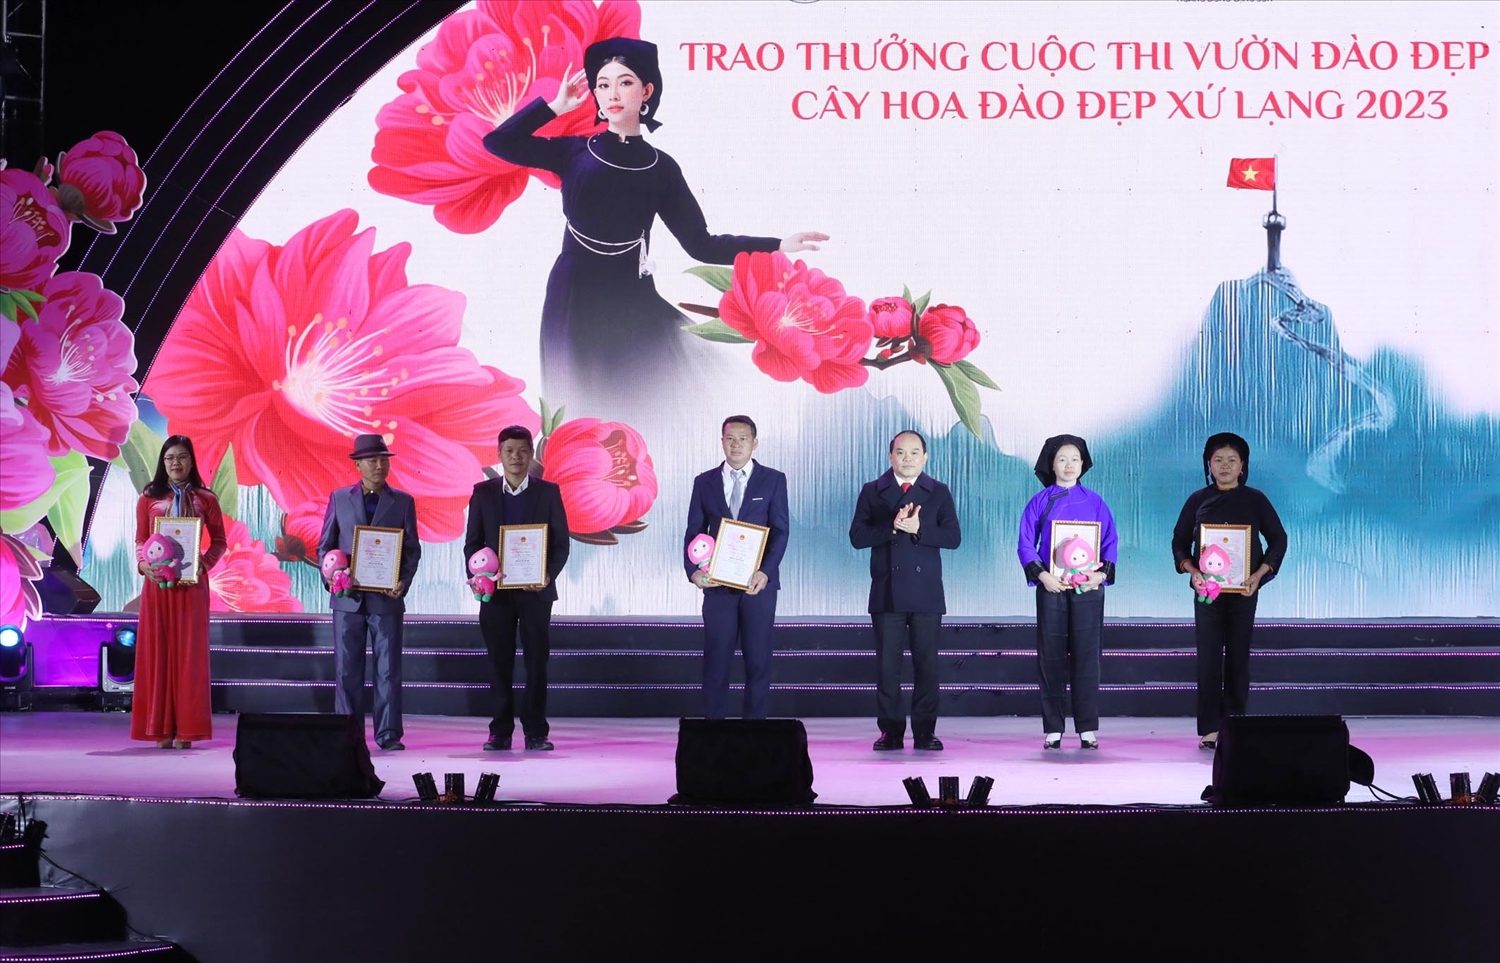 Bí thư Tỉnh ủy Lạng Sơn Nguyễn Quốc Đoàn trao thưởng Cuộc thi Vườn đào đẹp tại Lễ hội Hoa đào xứ Lạng 